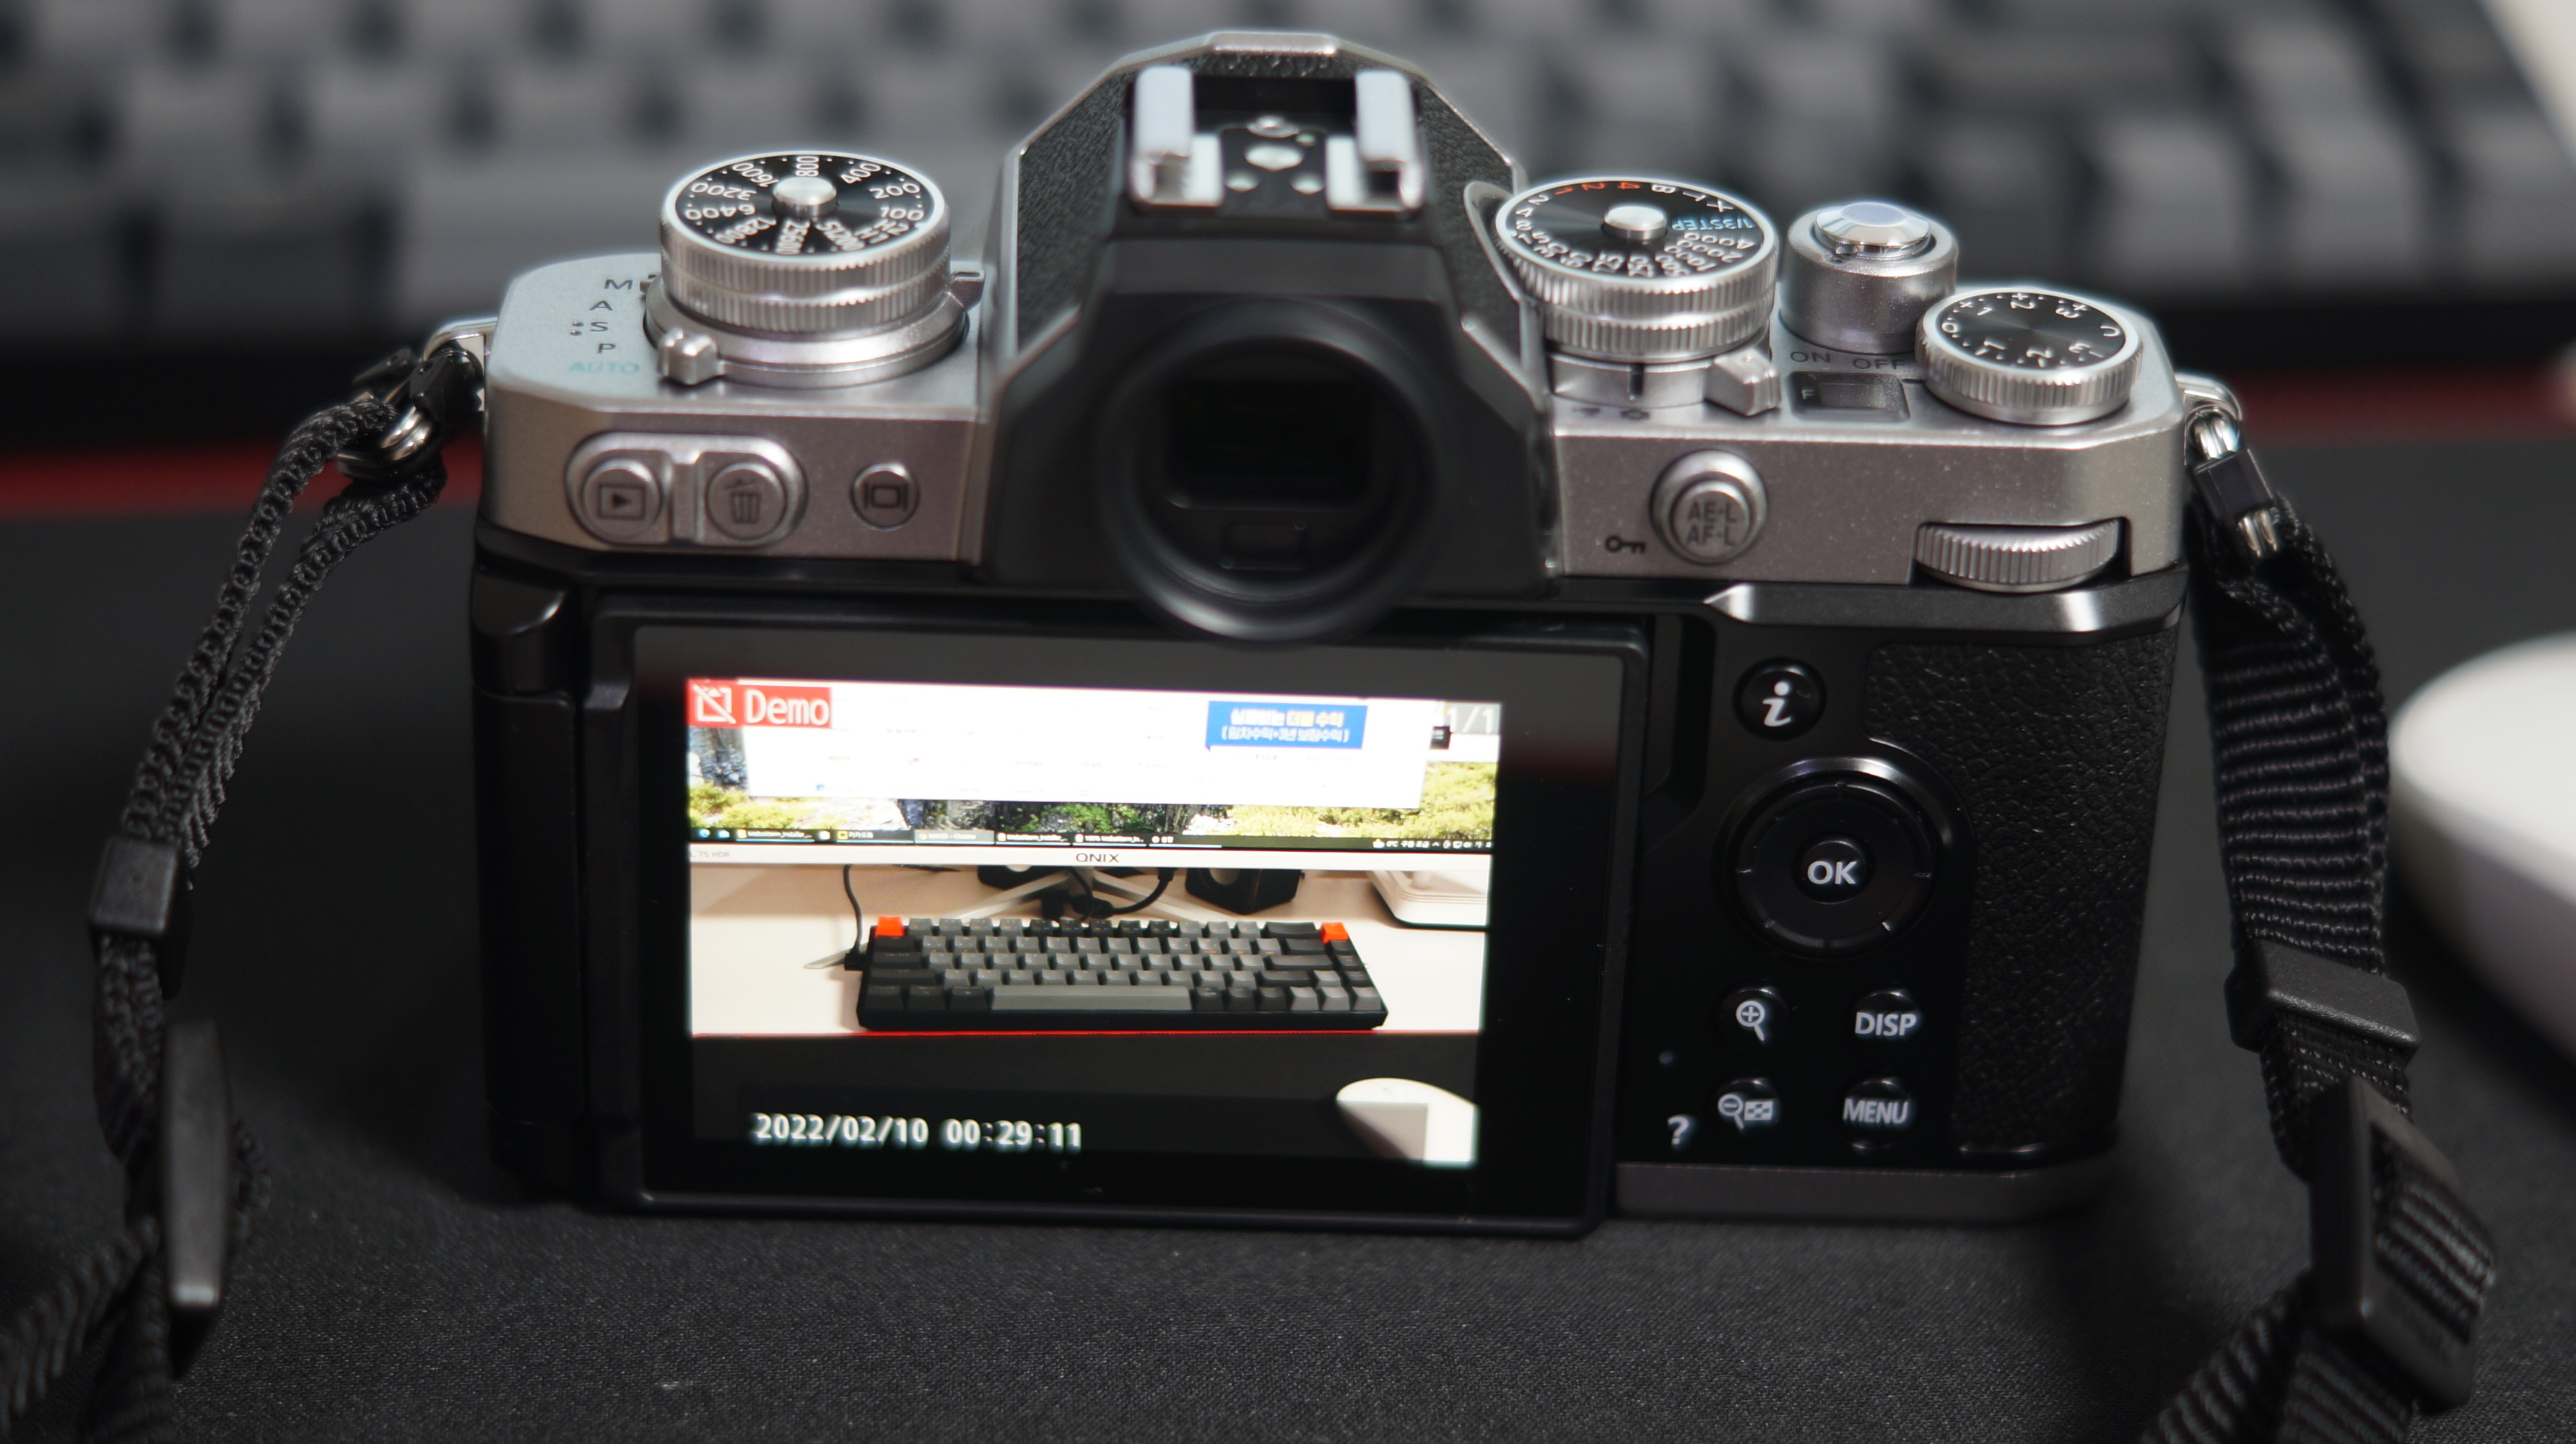 니콘 Zfc 레트로 디자인의 미러리스 디지털카메라 개봉기 사진15